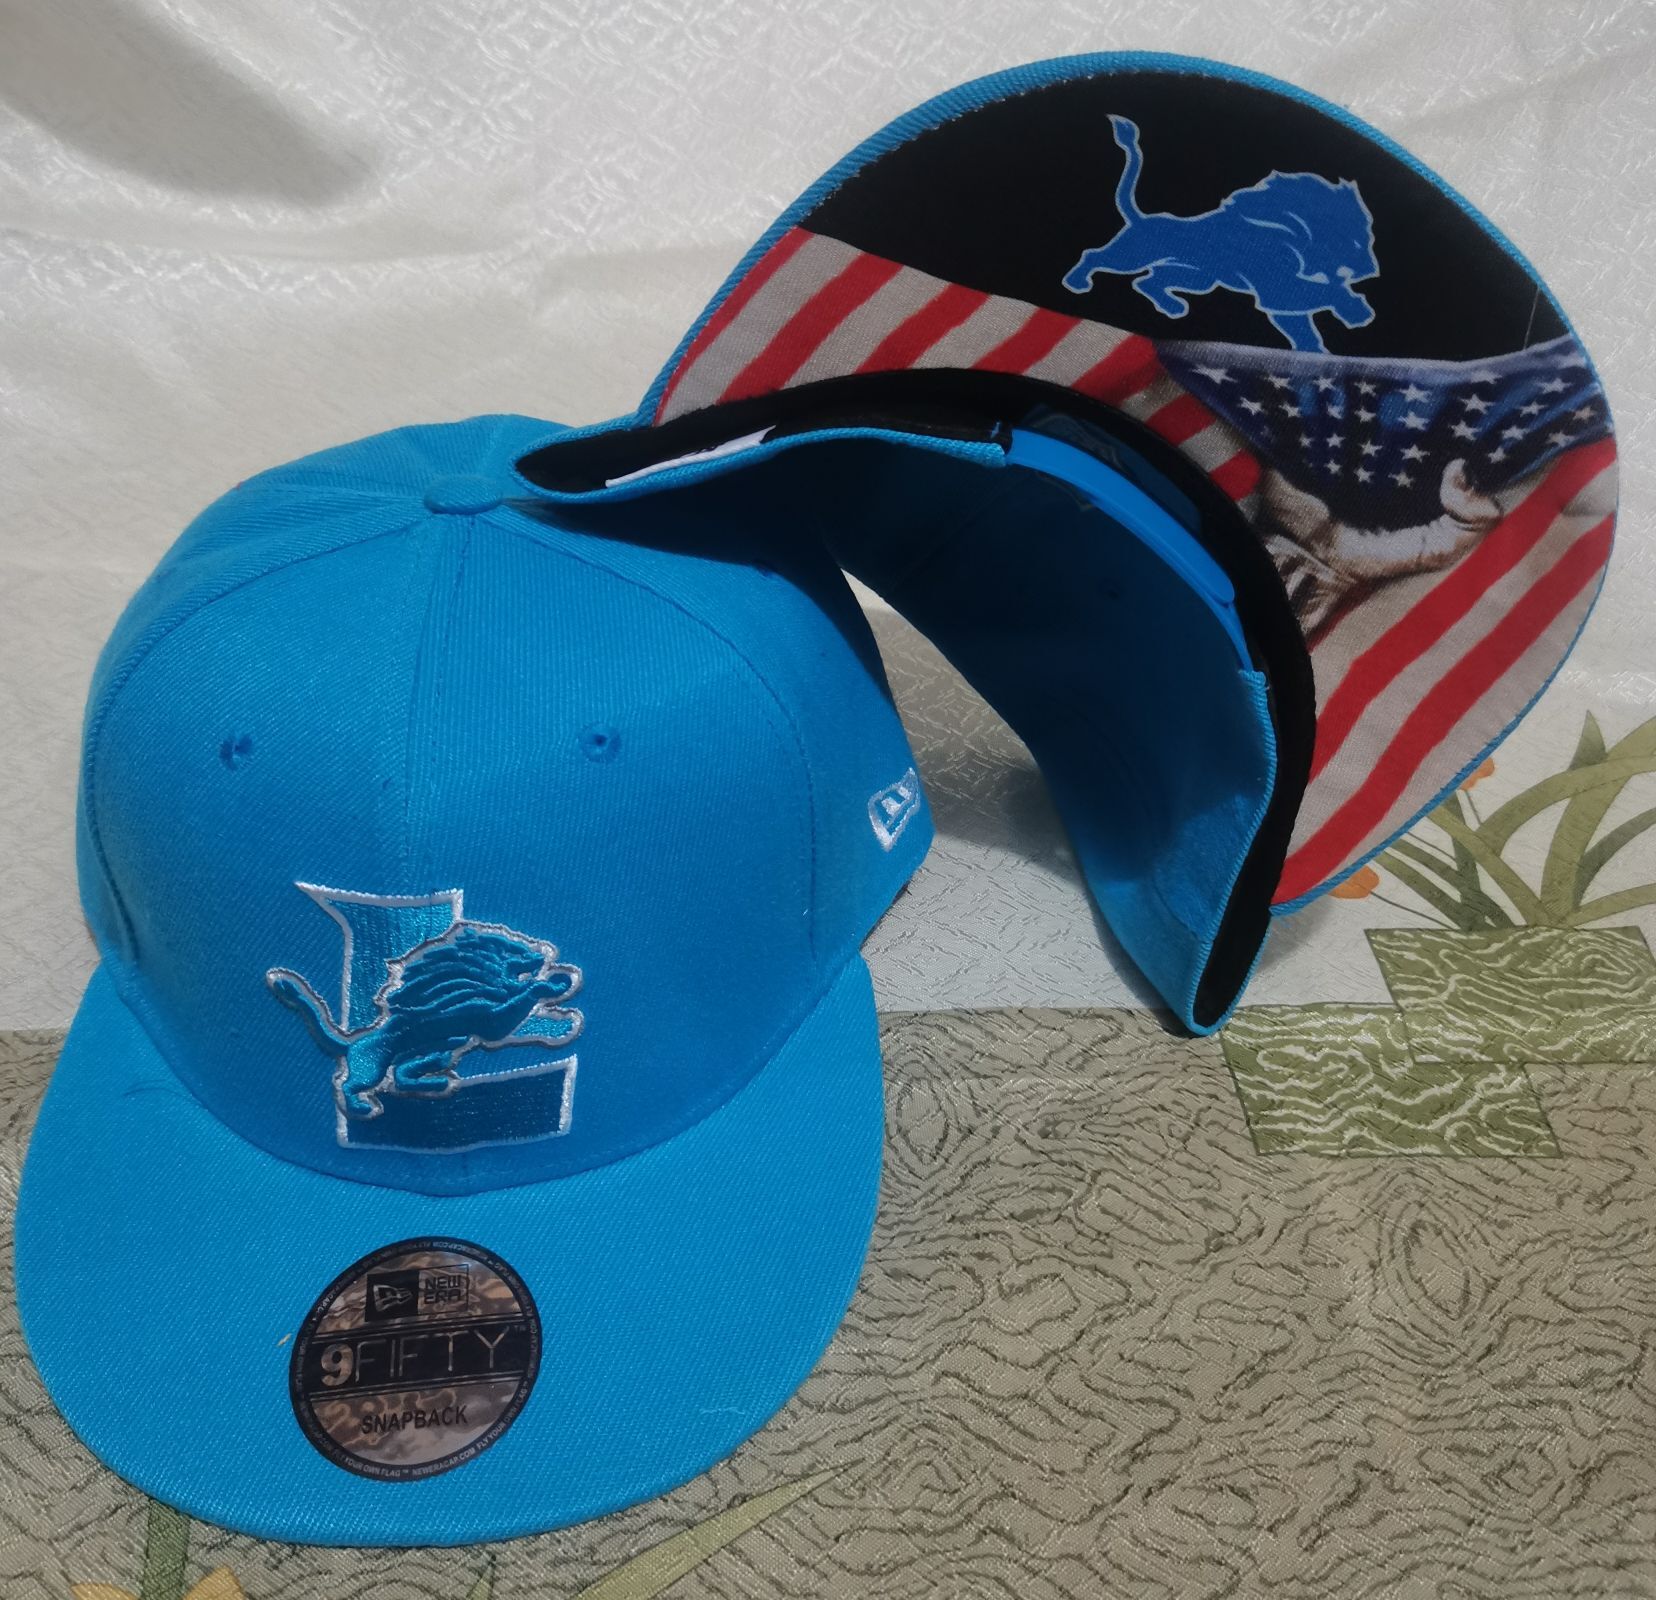 2021 NFL Detroit Lions #13 hat->nfl hats->Sports Caps